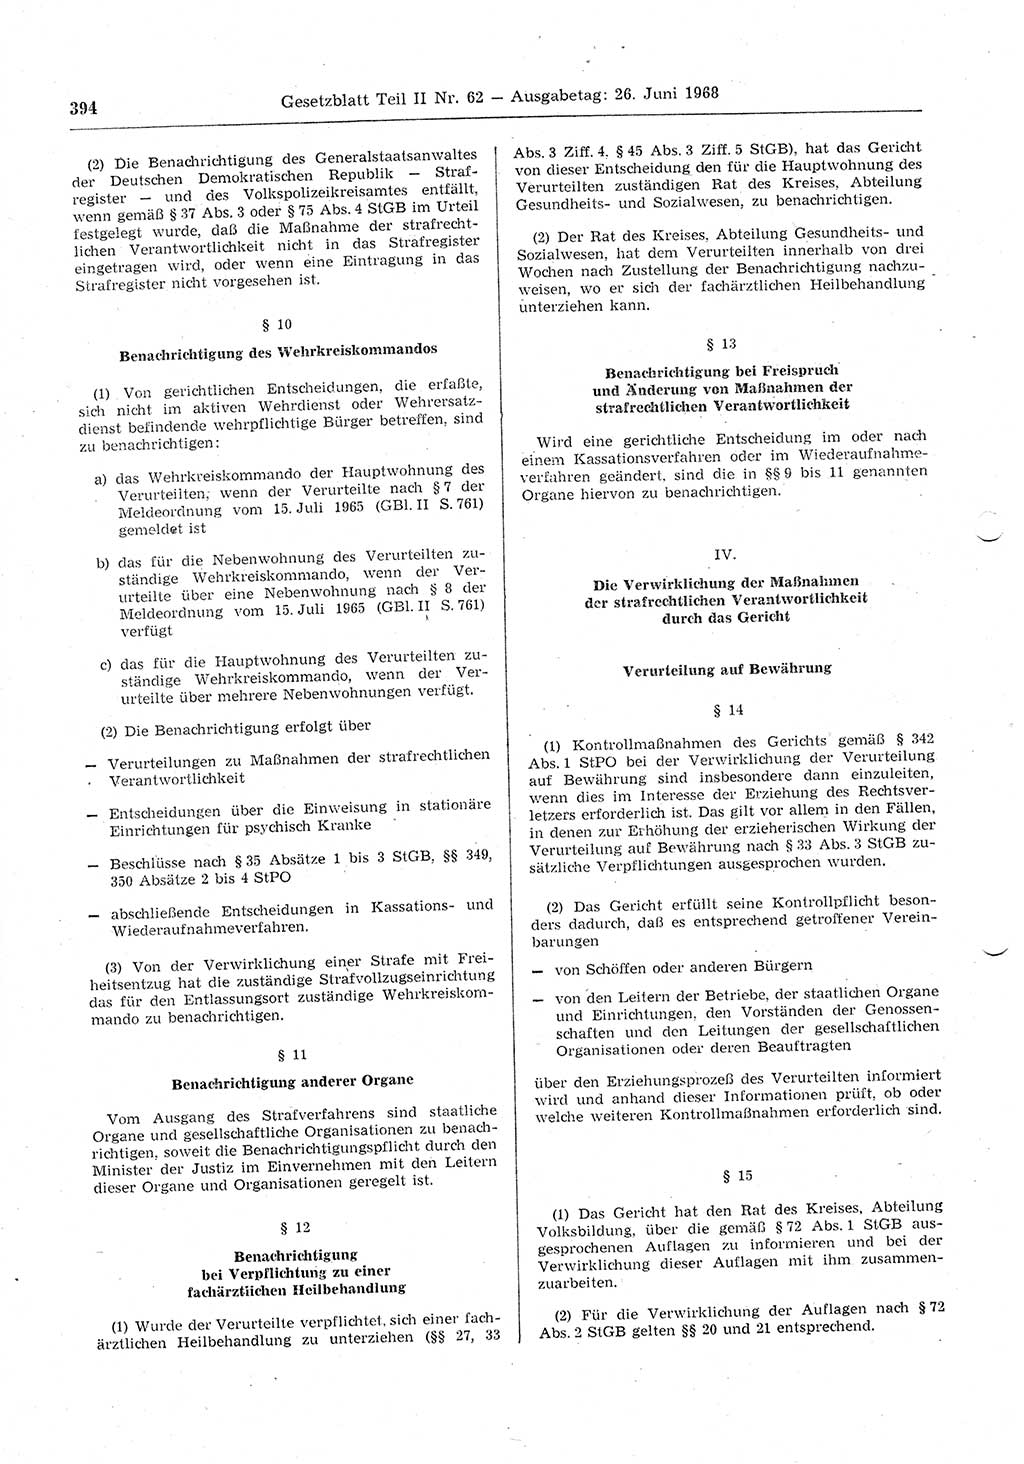 Gesetzblatt (GBl.) der Deutschen Demokratischen Republik (DDR) Teil ⅠⅠ 1968, Seite 394 (GBl. DDR ⅠⅠ 1968, S. 394)